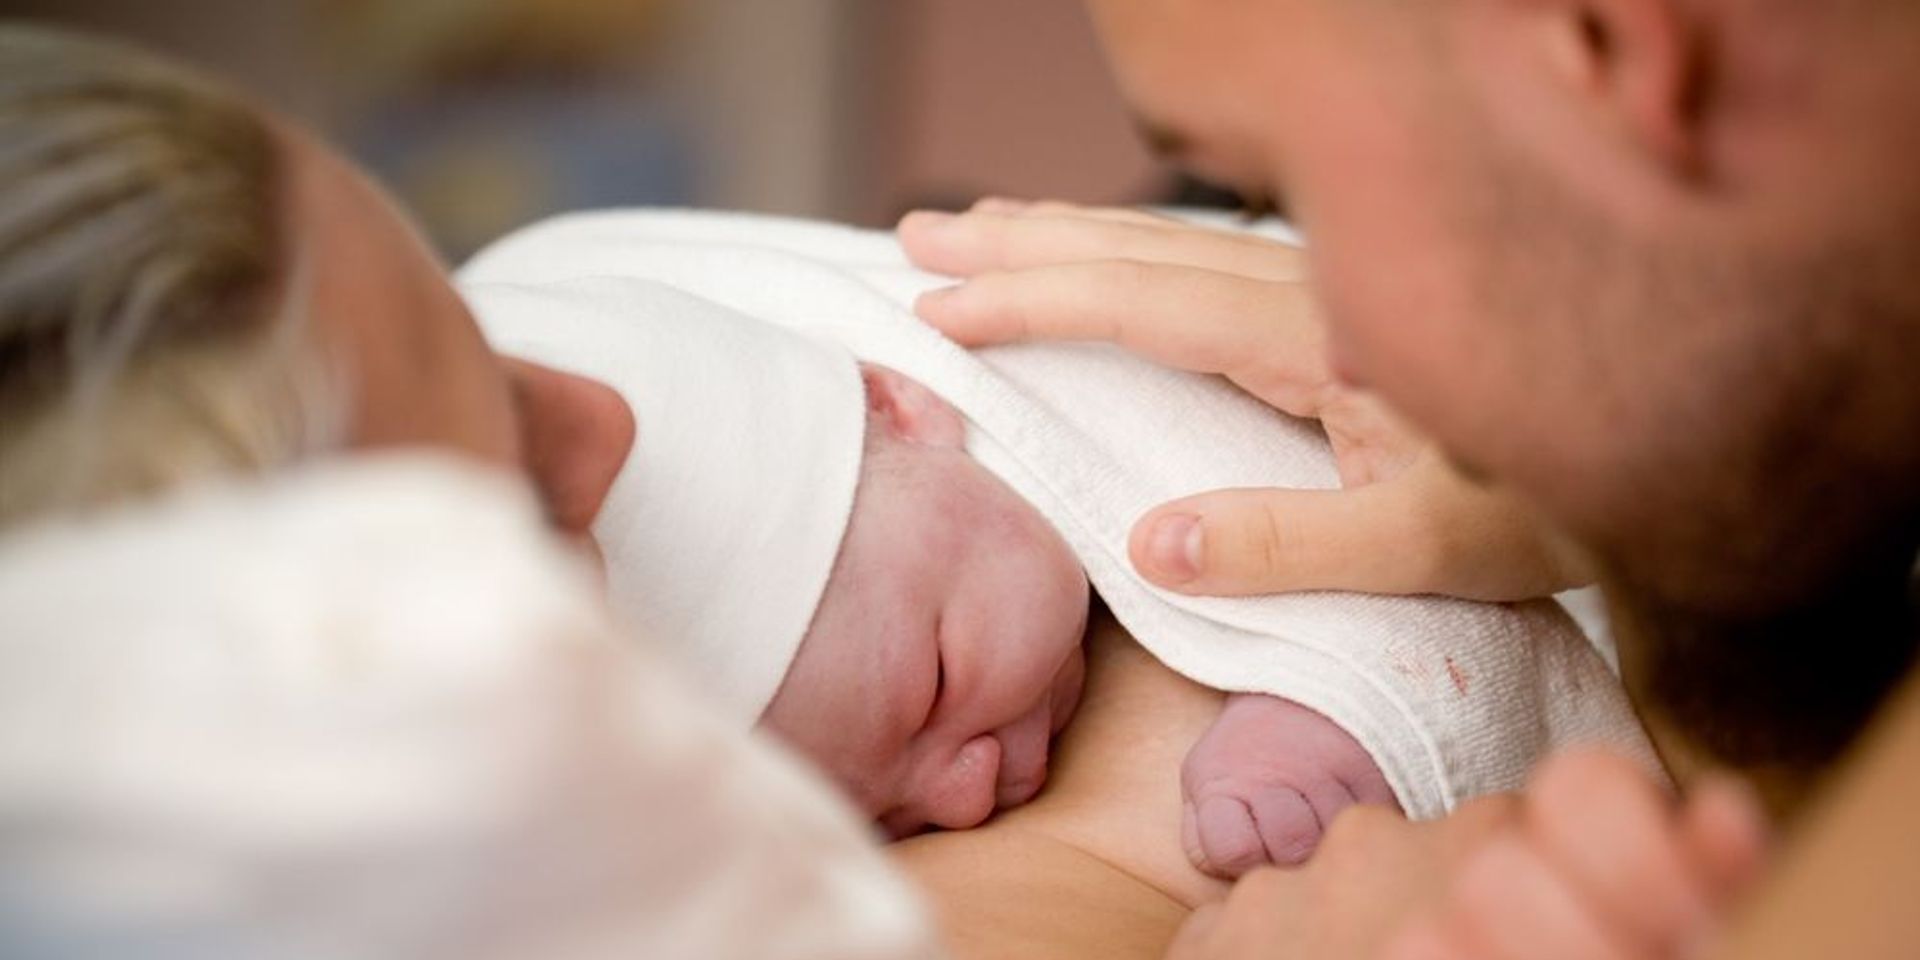 A legnépszerűbb online tanfolyam a Szent János Kórház szülésfelkészítője